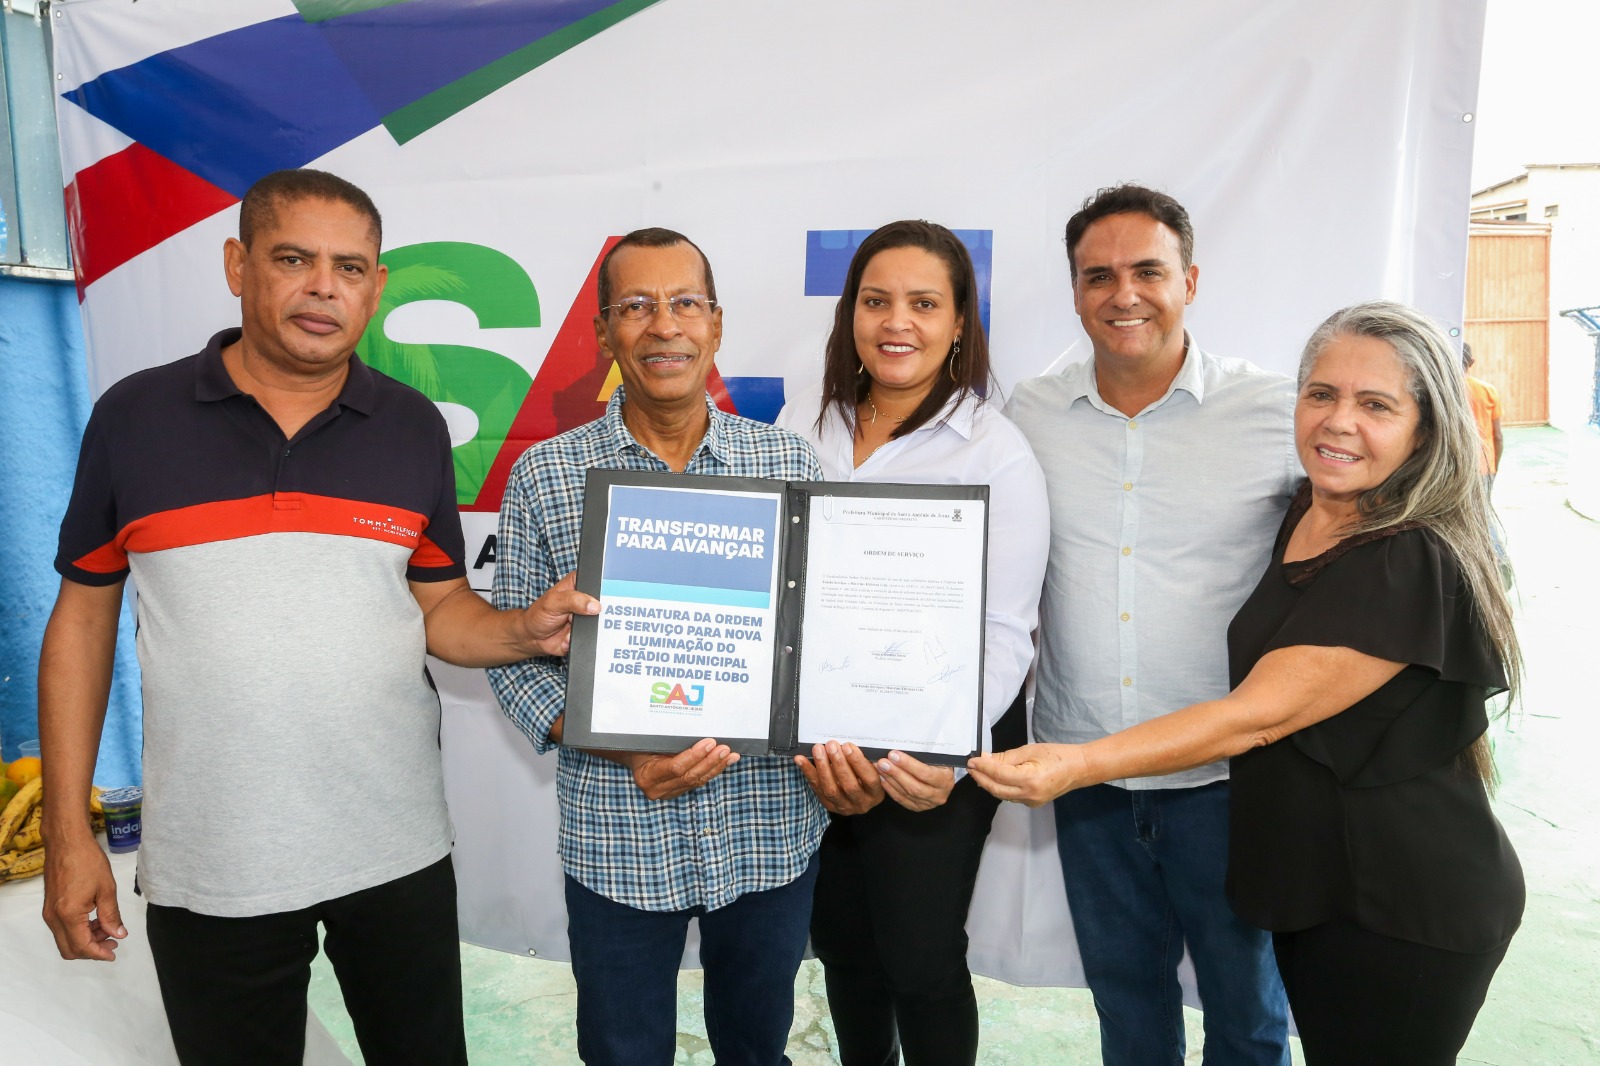 Prefeitura de Santo Antônio de Jesus realizou assinatura de ordem de serviço para instalação de nova iluminação no estádio José Trindade Lobo